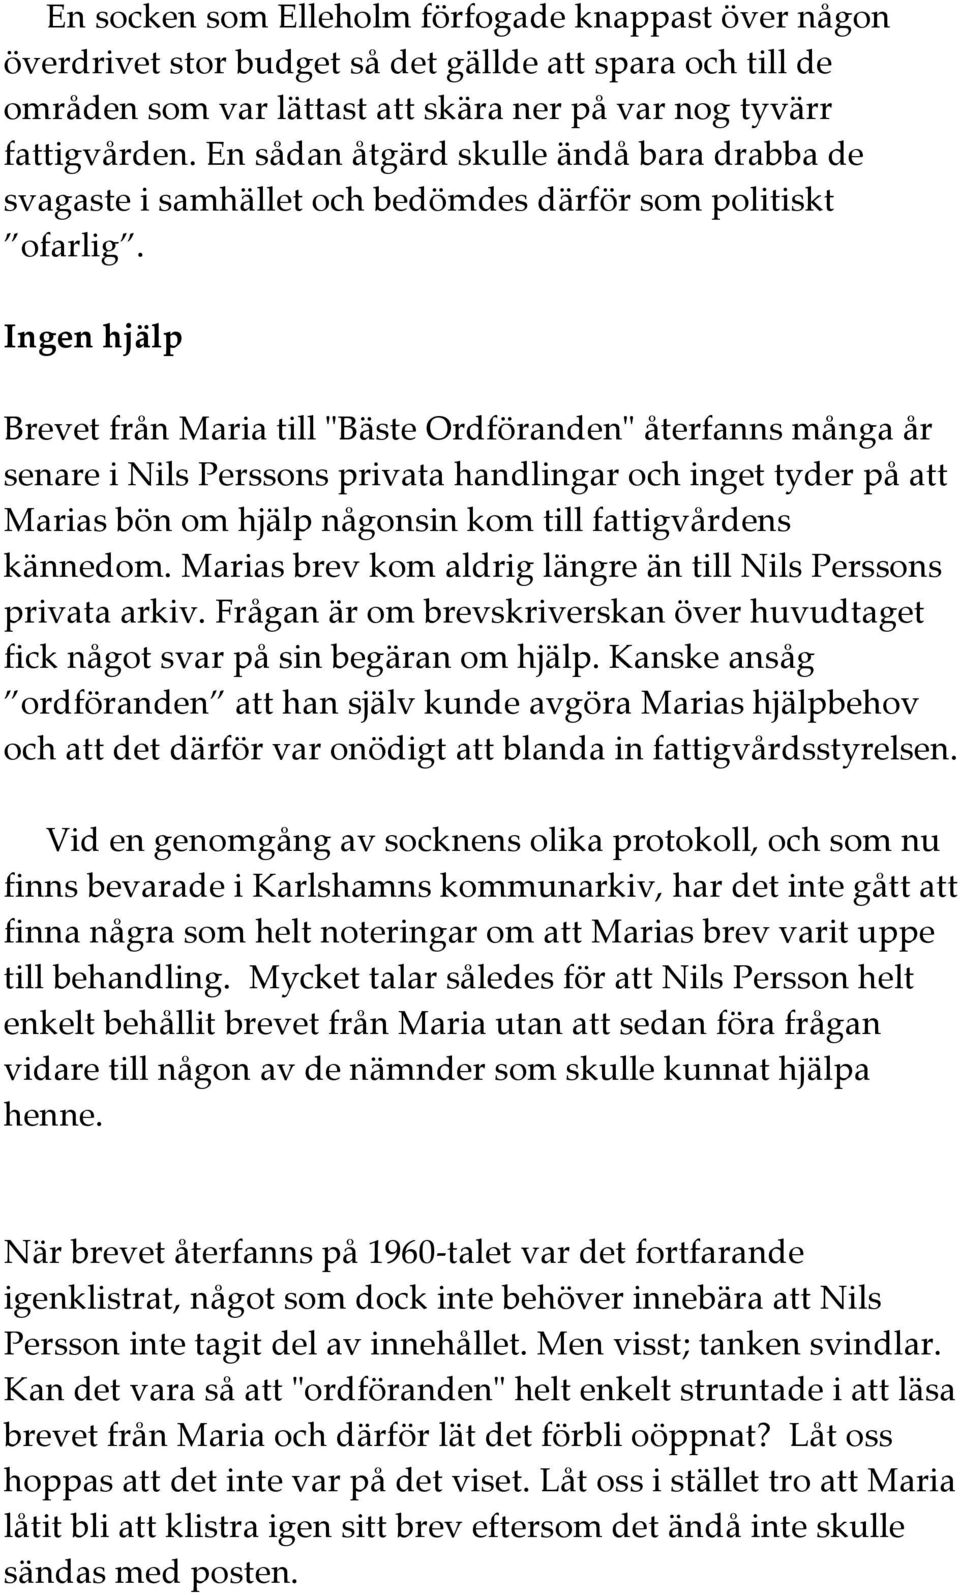 Ingen hjälp Brevet från Maria till "Bäste Ordföranden" återfanns många år senare i Nils Perssons privata handlingar och inget tyder på att Marias bön om hjälp någonsin kom till fattigvårdens kännedom.